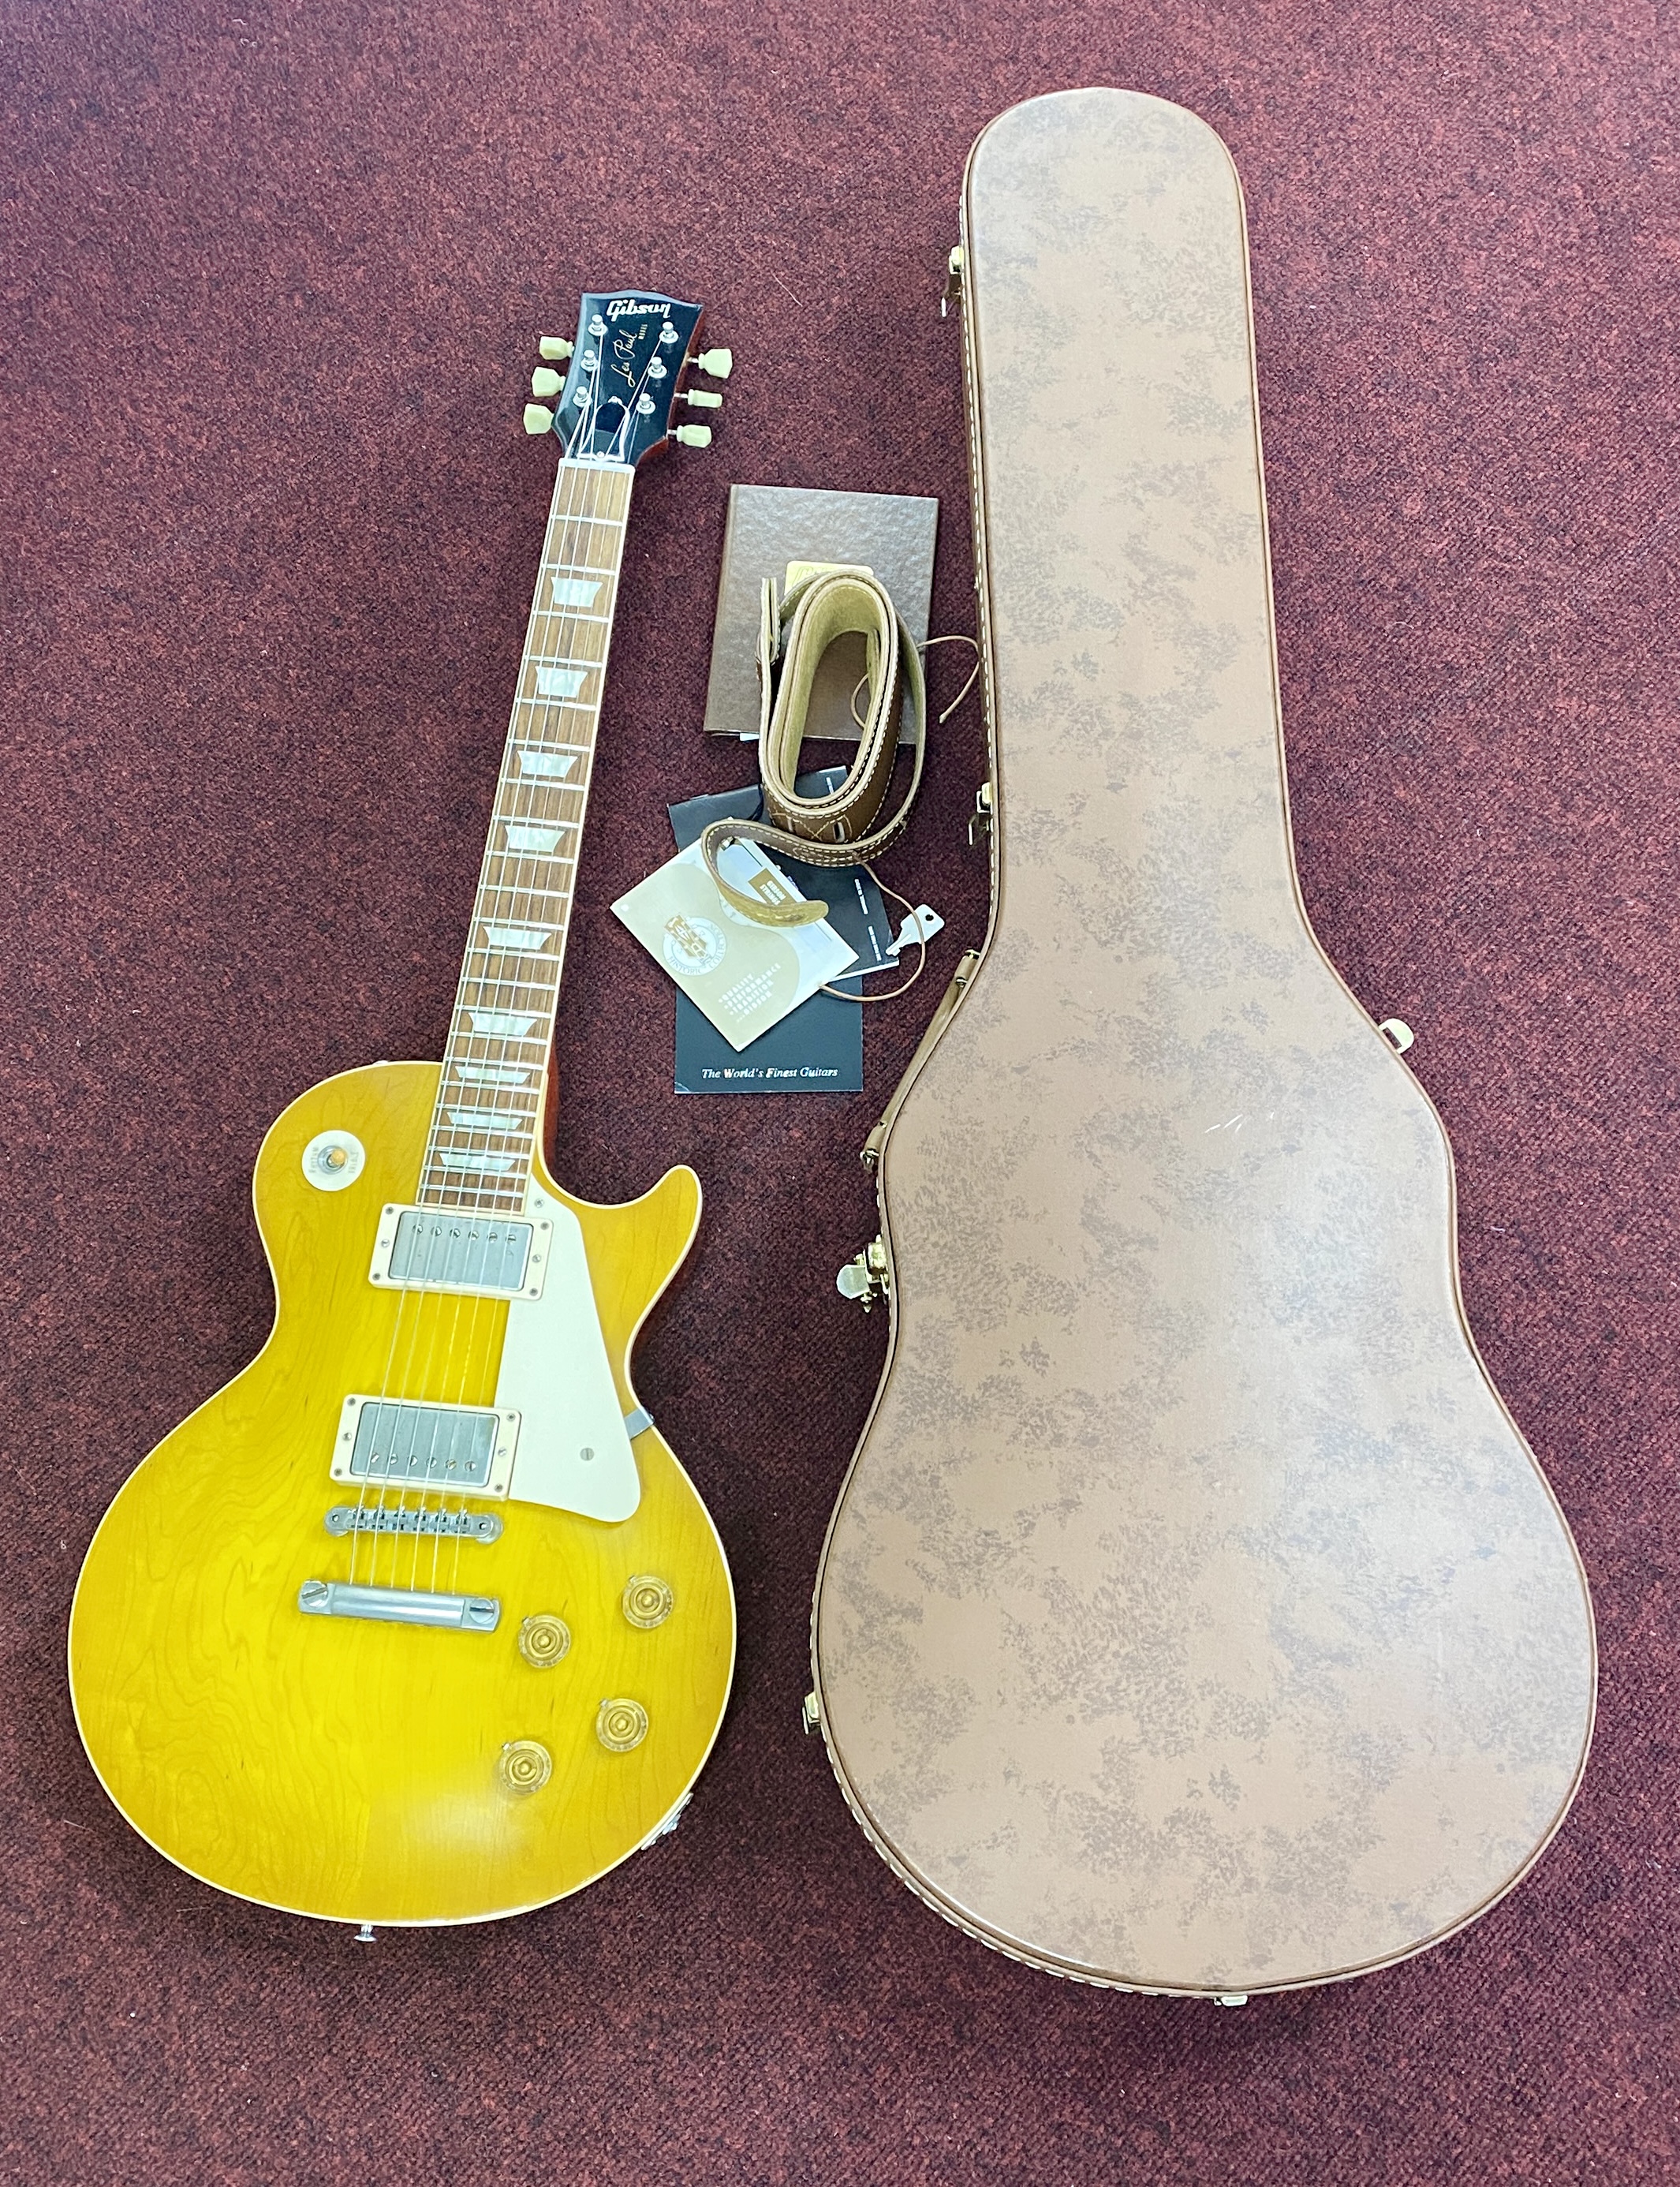 Gibson Les Paul Classic Lemon Burst Guitar 2012, serial 821031, model LPR8, Custom of the 1958 plain - Image 2 of 2